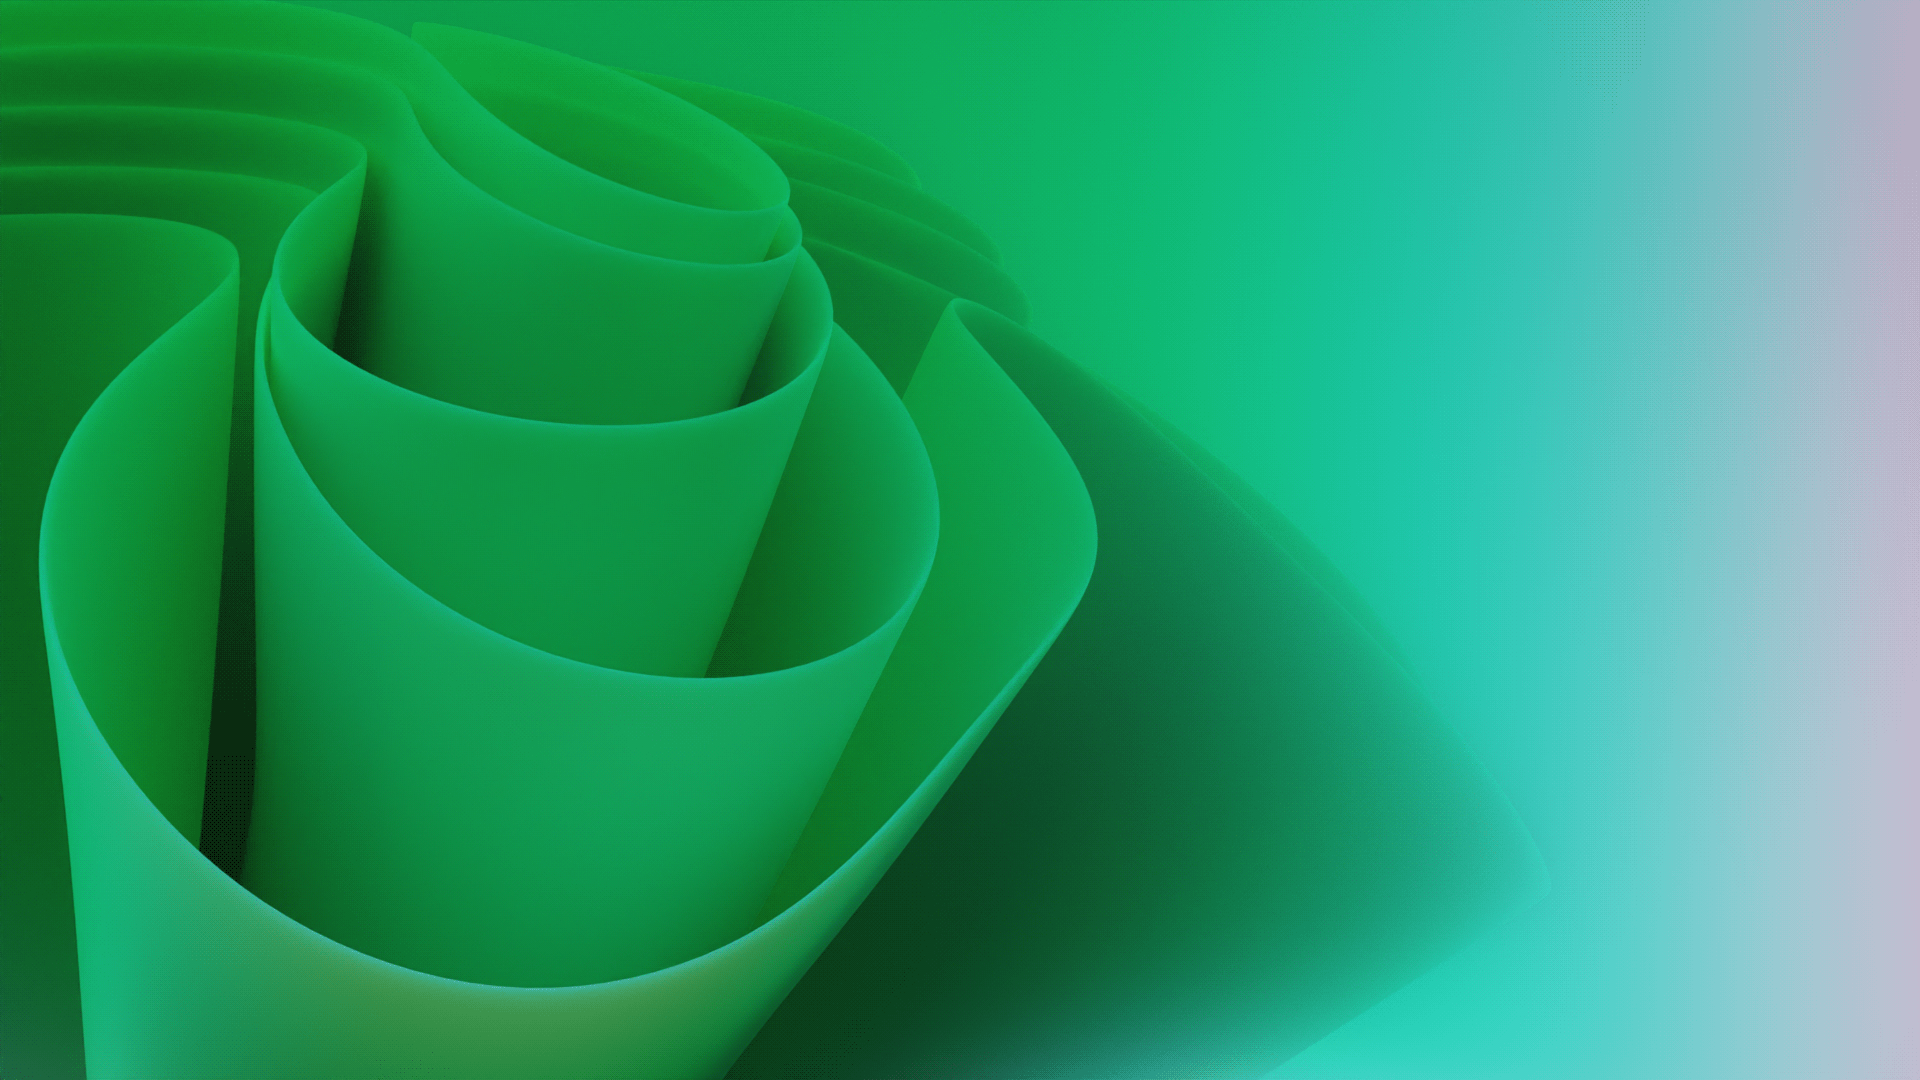 Wallpaper Cave vừa đăng tải một bộ sưu tập hình nền Windows 11 Green Wallpapers cực kỳ độc đáo và đẹp mắt. Những hình nền này mang đến sự tươi sáng, tinh tế và phù hợp cho mọi lứa tuổi. Hãy xem hình ảnh liên quan để có những trải nghiệm đầy thú vị nhé!